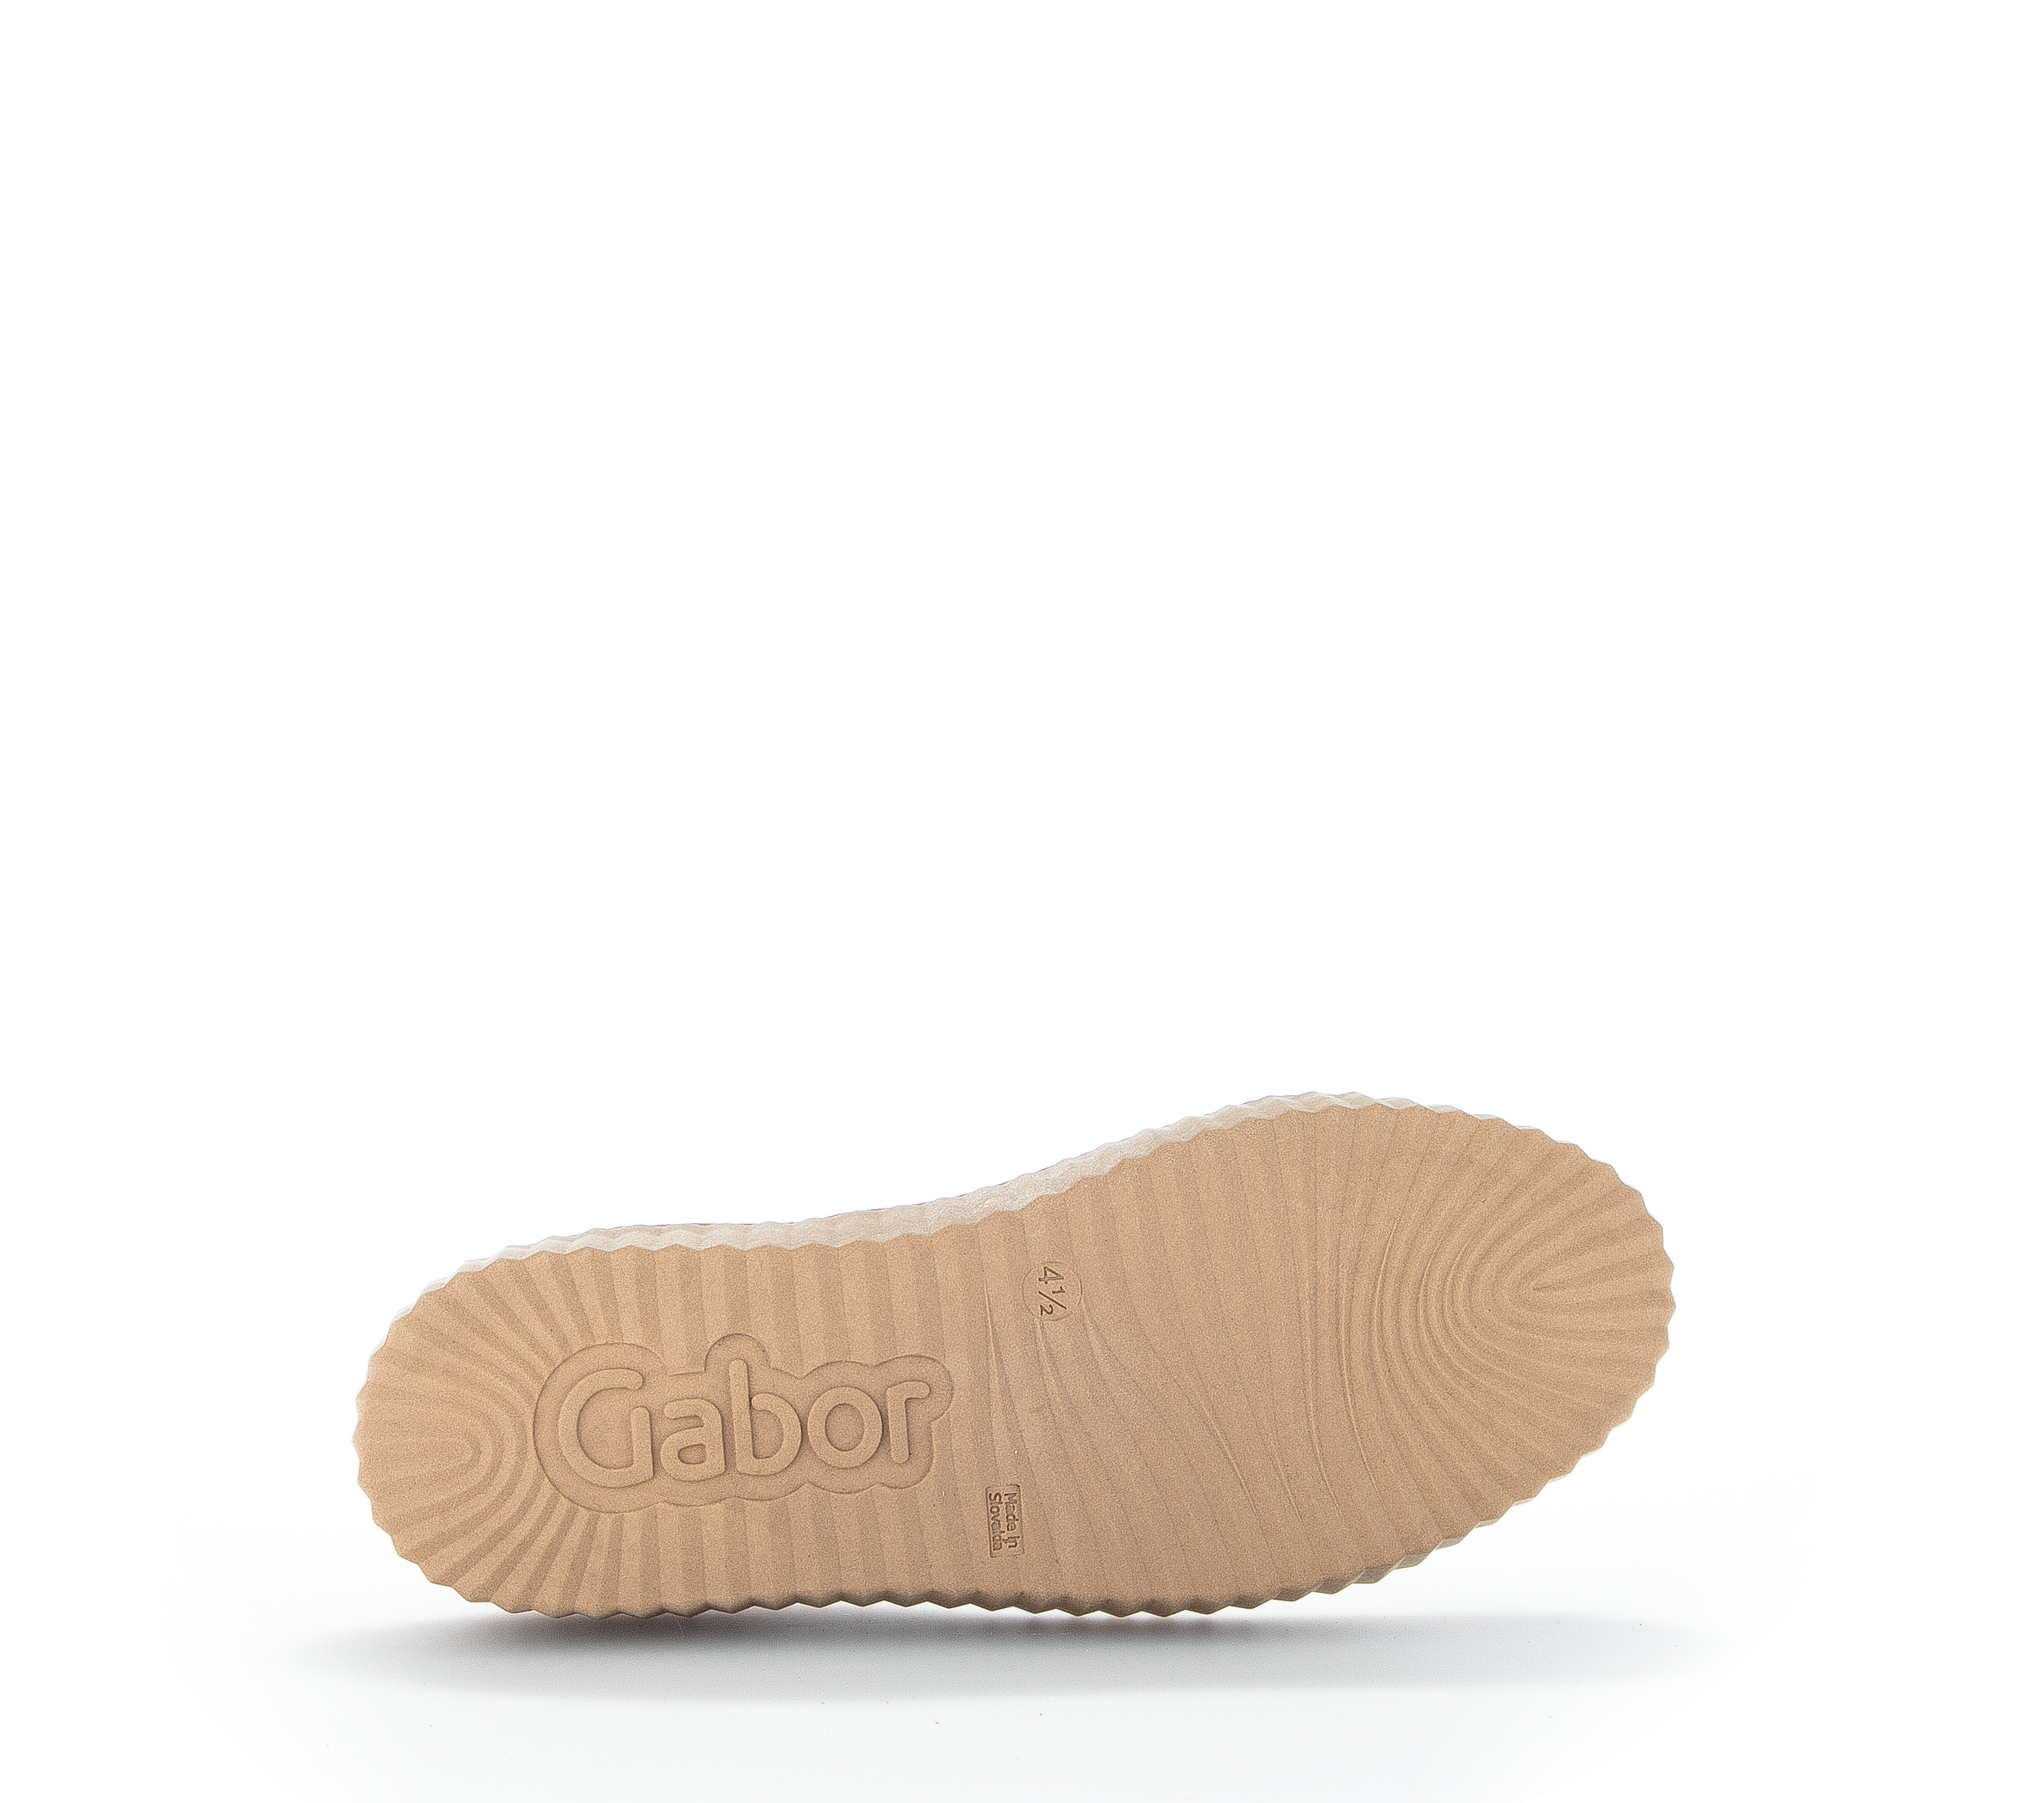 Gabor Shoes Schnürstiefelette - Braun Glattleder